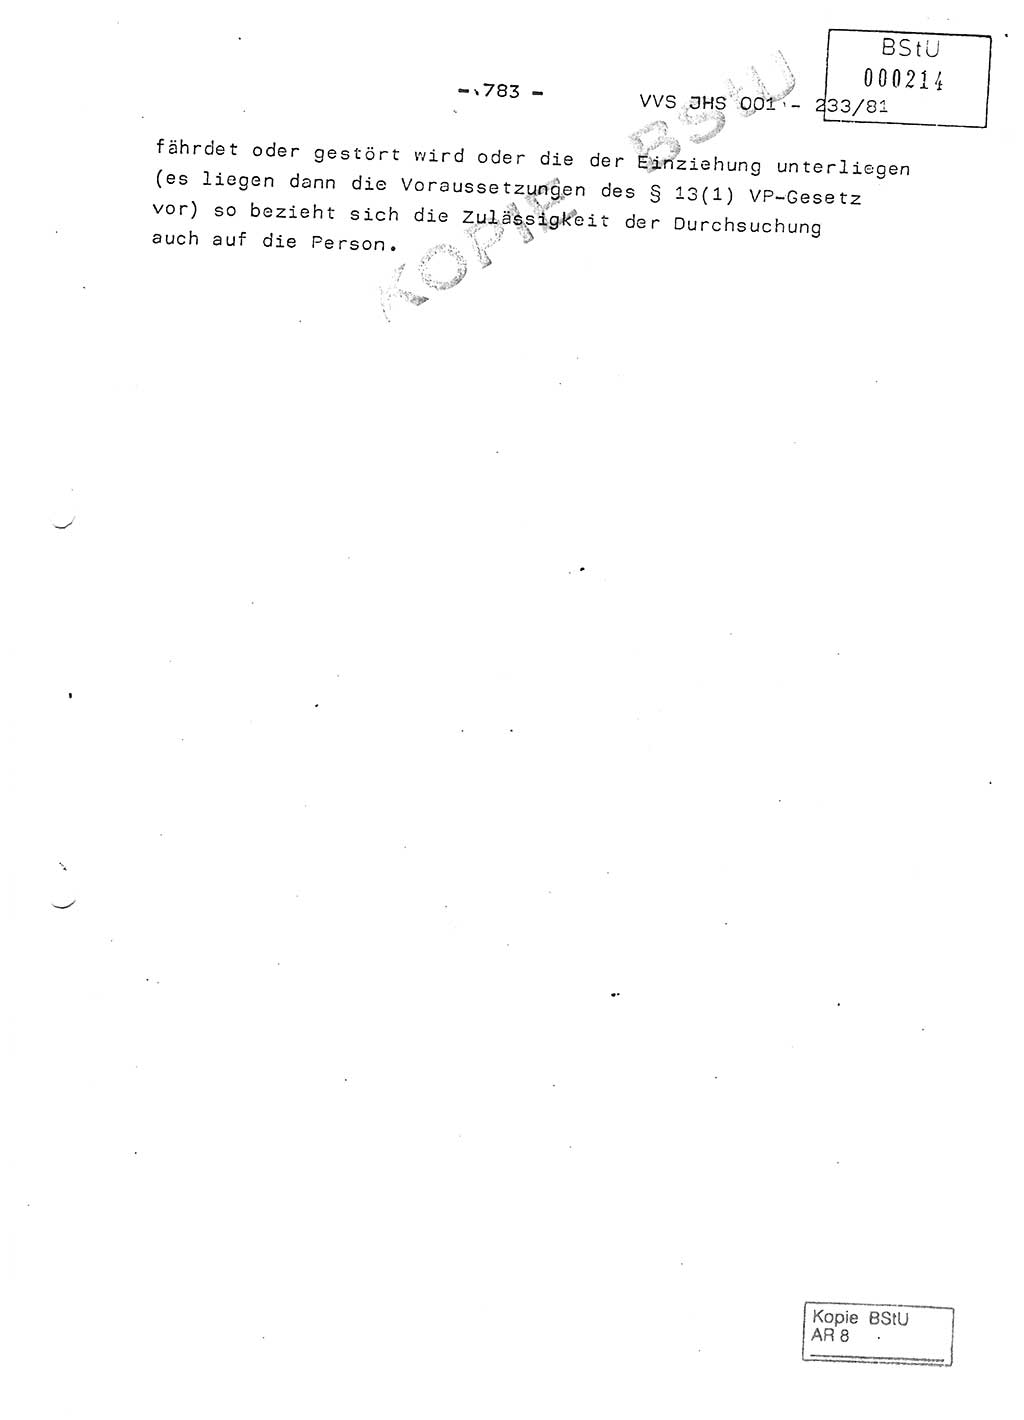 Dissertation Oberstleutnant Horst Zank (JHS), Oberstleutnant Dr. Karl-Heinz Knoblauch (JHS), Oberstleutnant Gustav-Adolf Kowalewski (HA Ⅸ), Oberstleutnant Wolfgang Plötner (HA Ⅸ), Ministerium für Staatssicherheit (MfS) [Deutsche Demokratische Republik (DDR)], Juristische Hochschule (JHS), Vertrauliche Verschlußsache (VVS) o001-233/81, Potsdam 1981, Blatt 783 (Diss. MfS DDR JHS VVS o001-233/81 1981, Bl. 783)